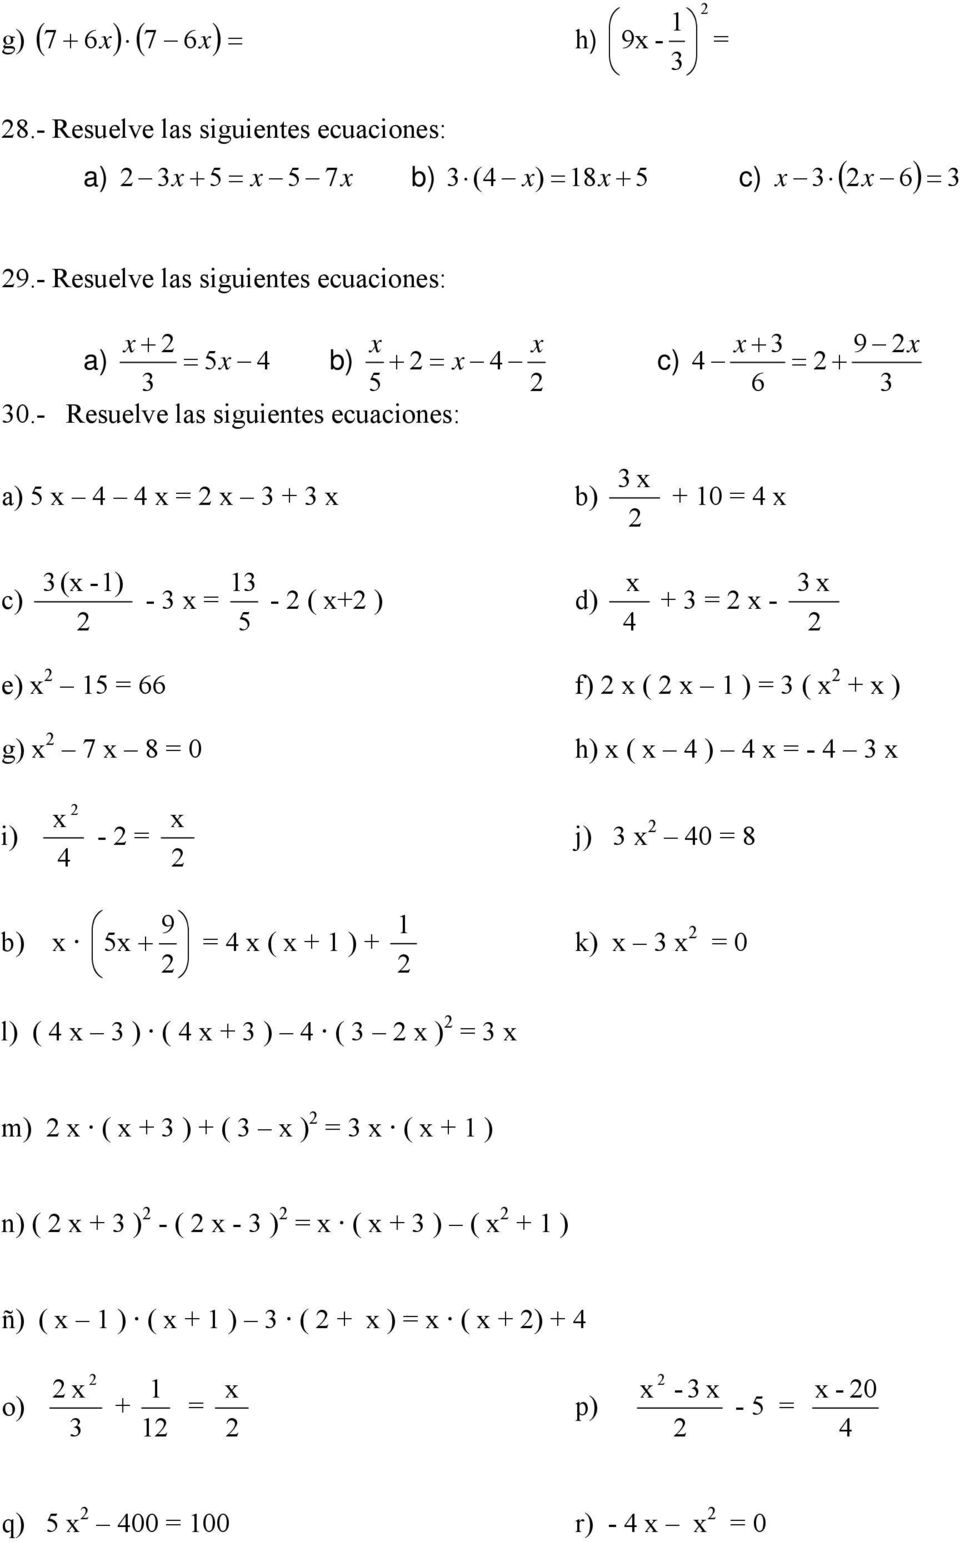 - Resuelve las siguientes ecuaciones: x 9 x 6 a) x x = x + x b) x + 0 = x c) (x -) x - x = - ( x+ ) d) + = x - x e) x = 66 f) x ( x ) = ( x + x )